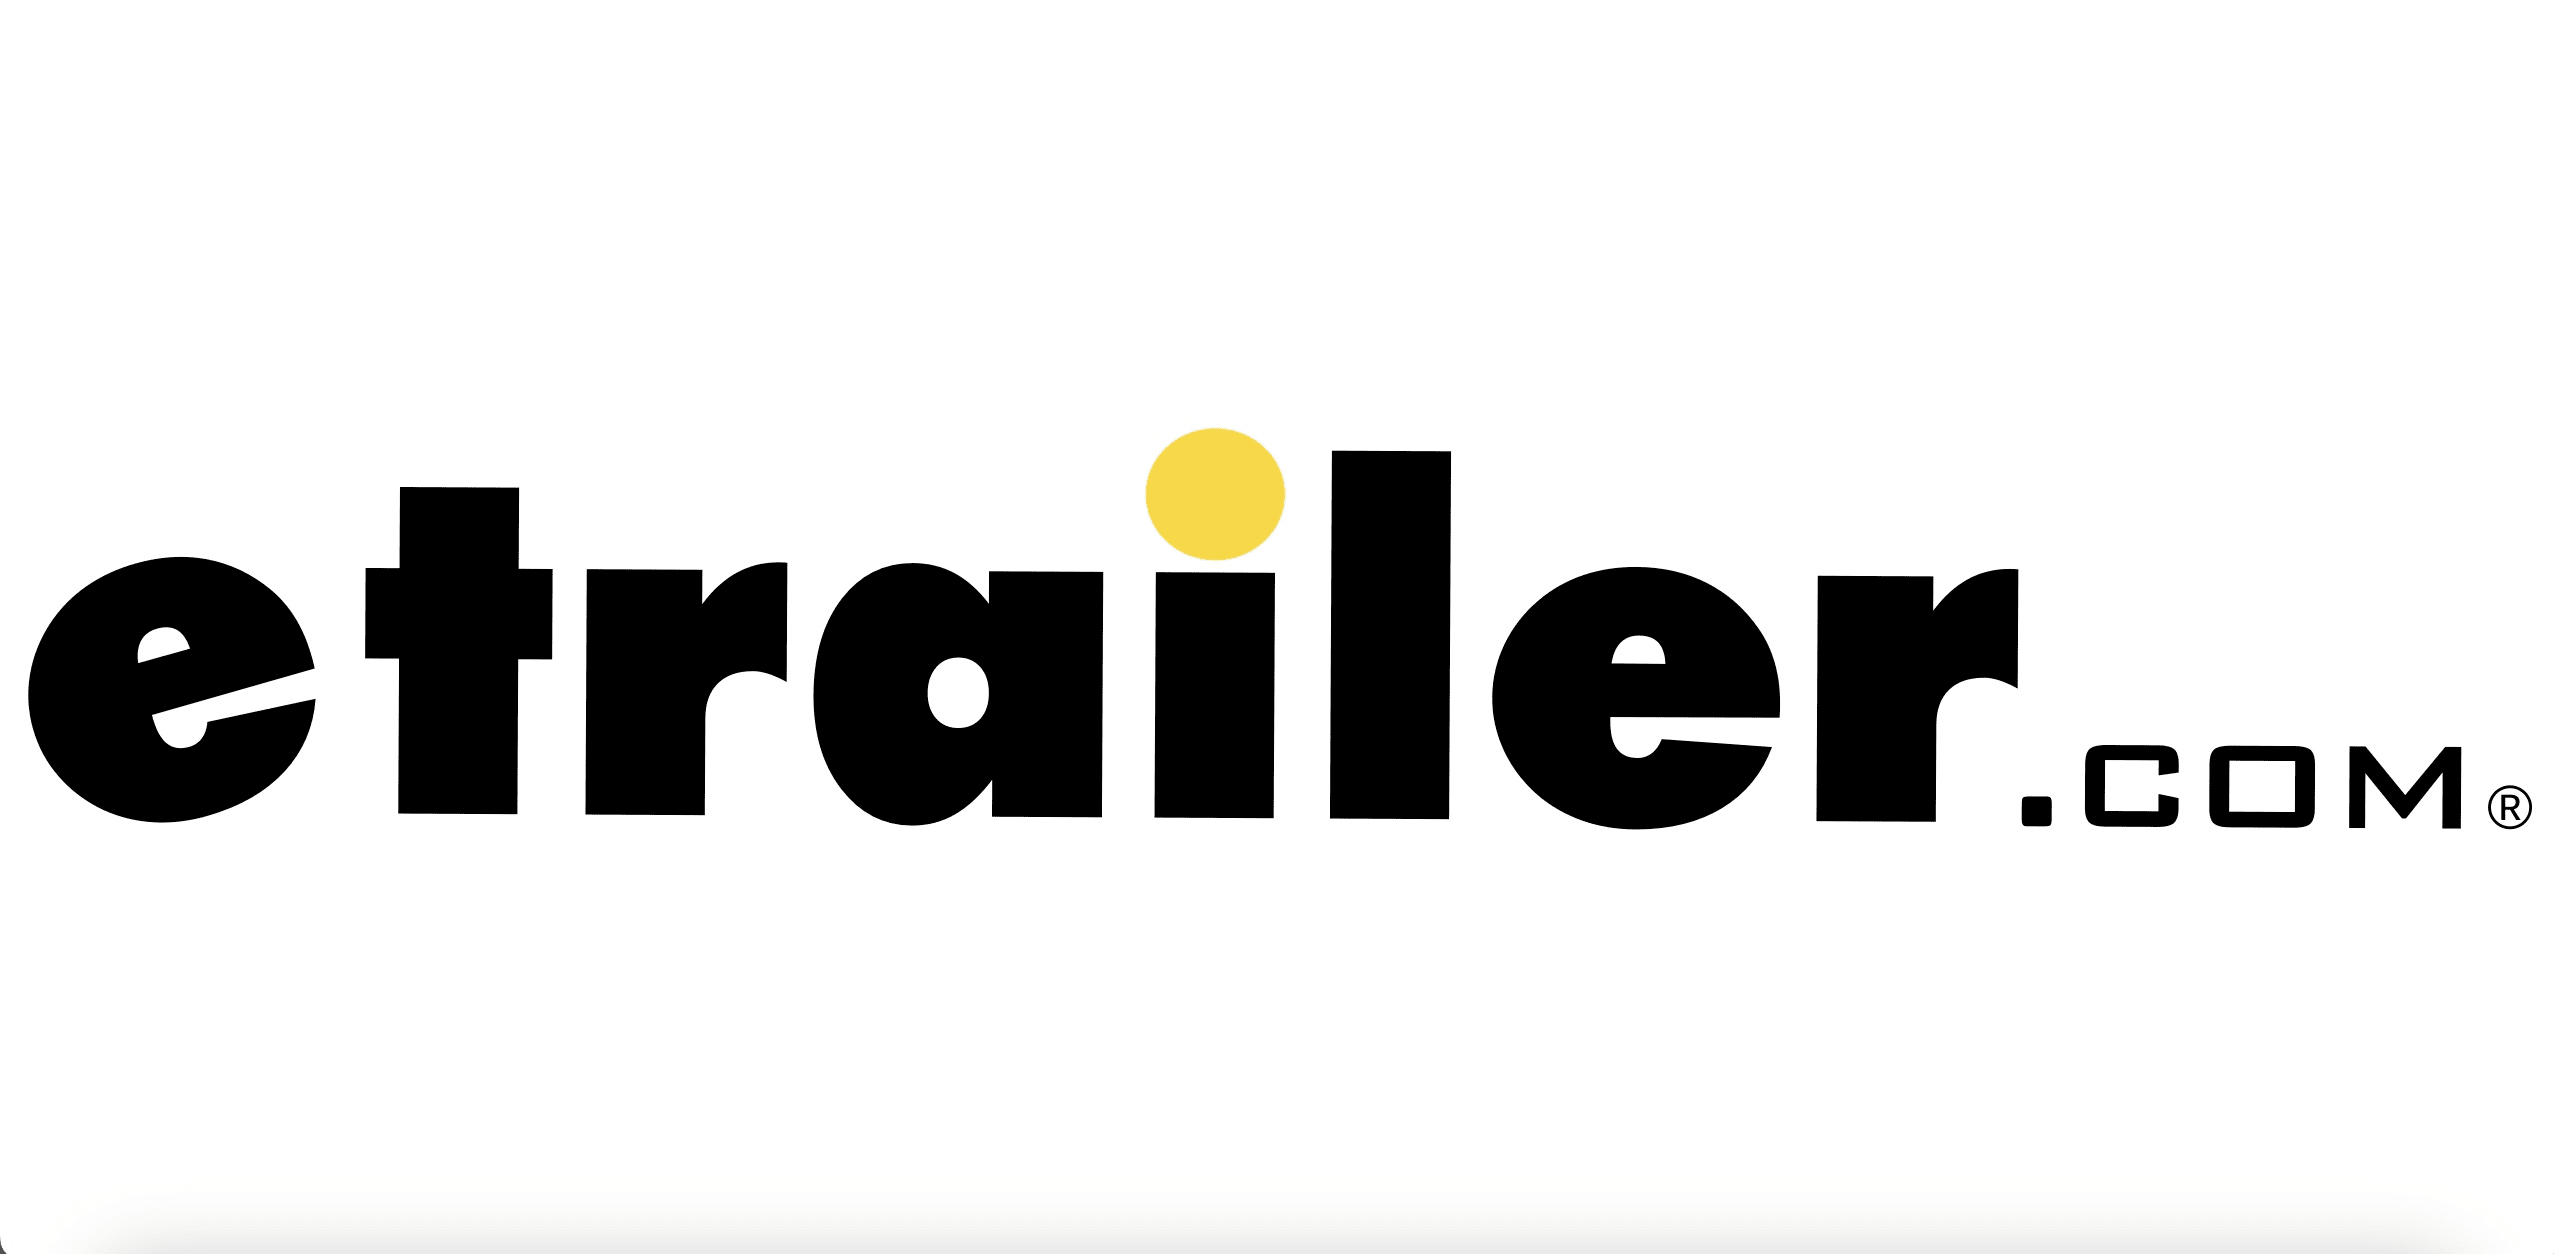 The etrailer.com logo